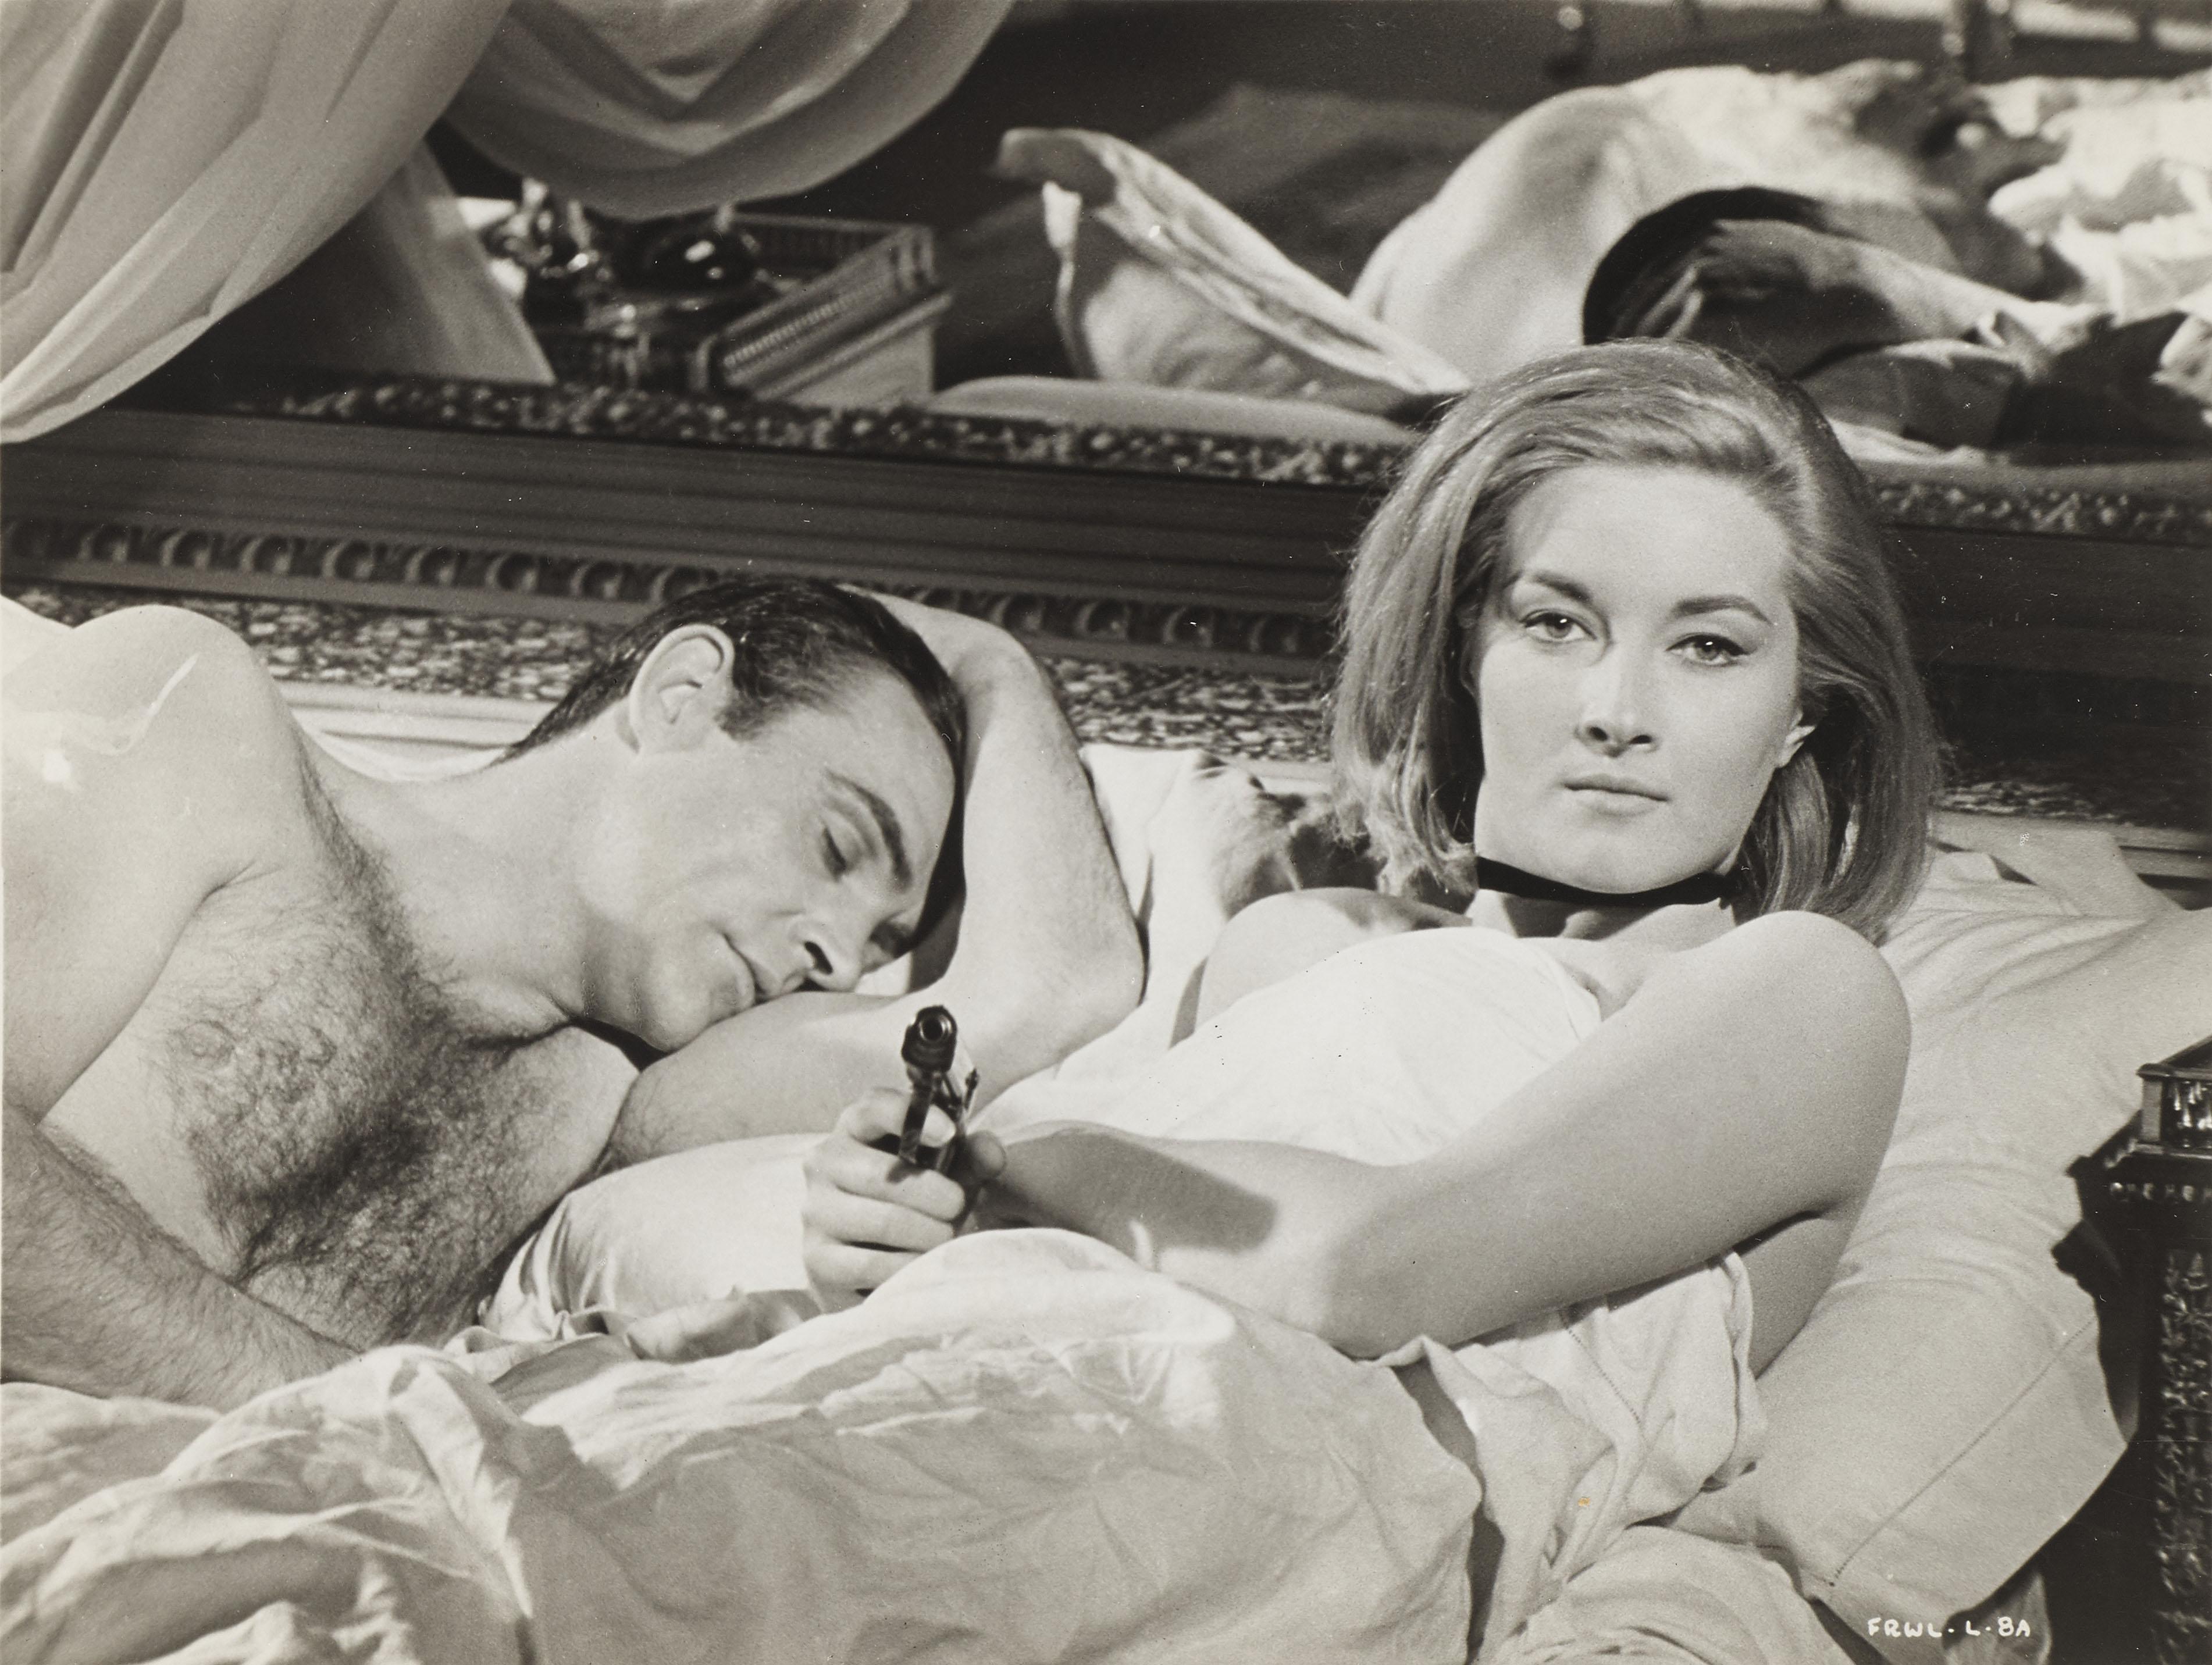 Photo de production originale en noir et blanc pour la deuxième sortie de Sean Connery en tant que 007 dans From Russia with Love 1963.
la légendaire comédie d'Audrey Hepburn de 1961, Romance. Ce film a été réalisé par Terence Young, avec pour